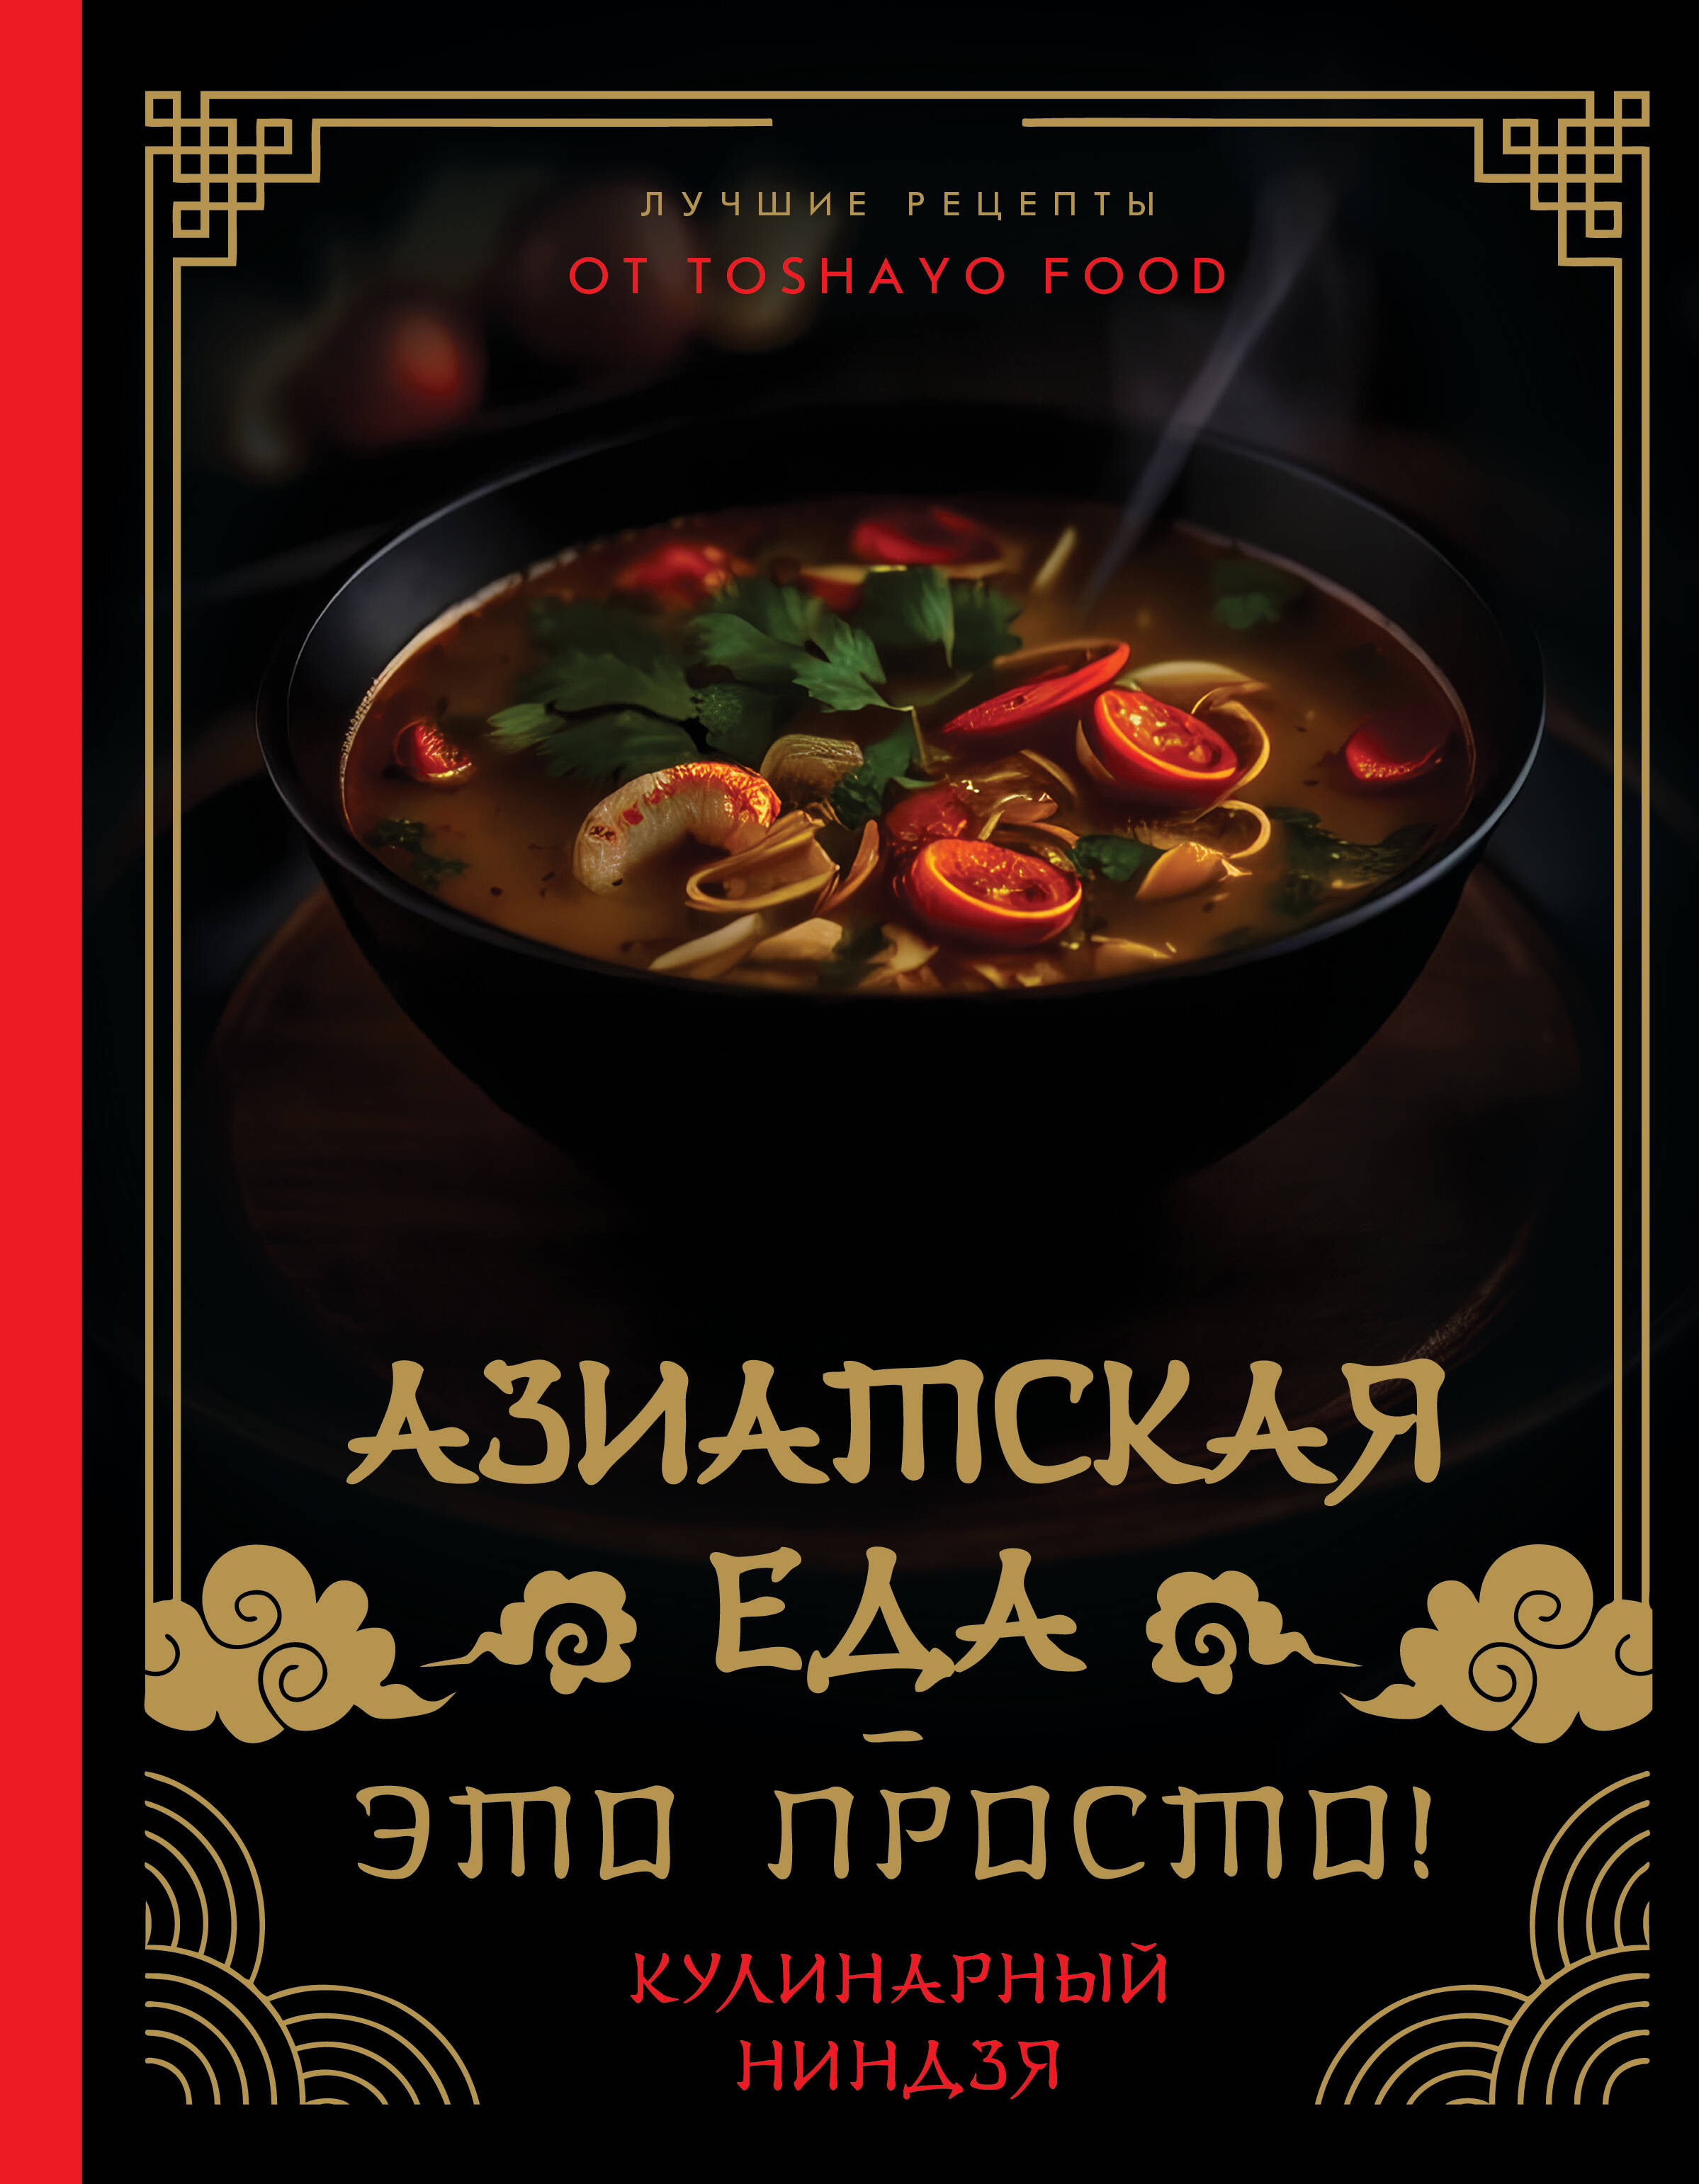 Сурин Антон Александрович Азиатская еда – это просто! Кулинарный ниндзя. Лучшие рецепты от TOSHAYO FOOD цена и фото